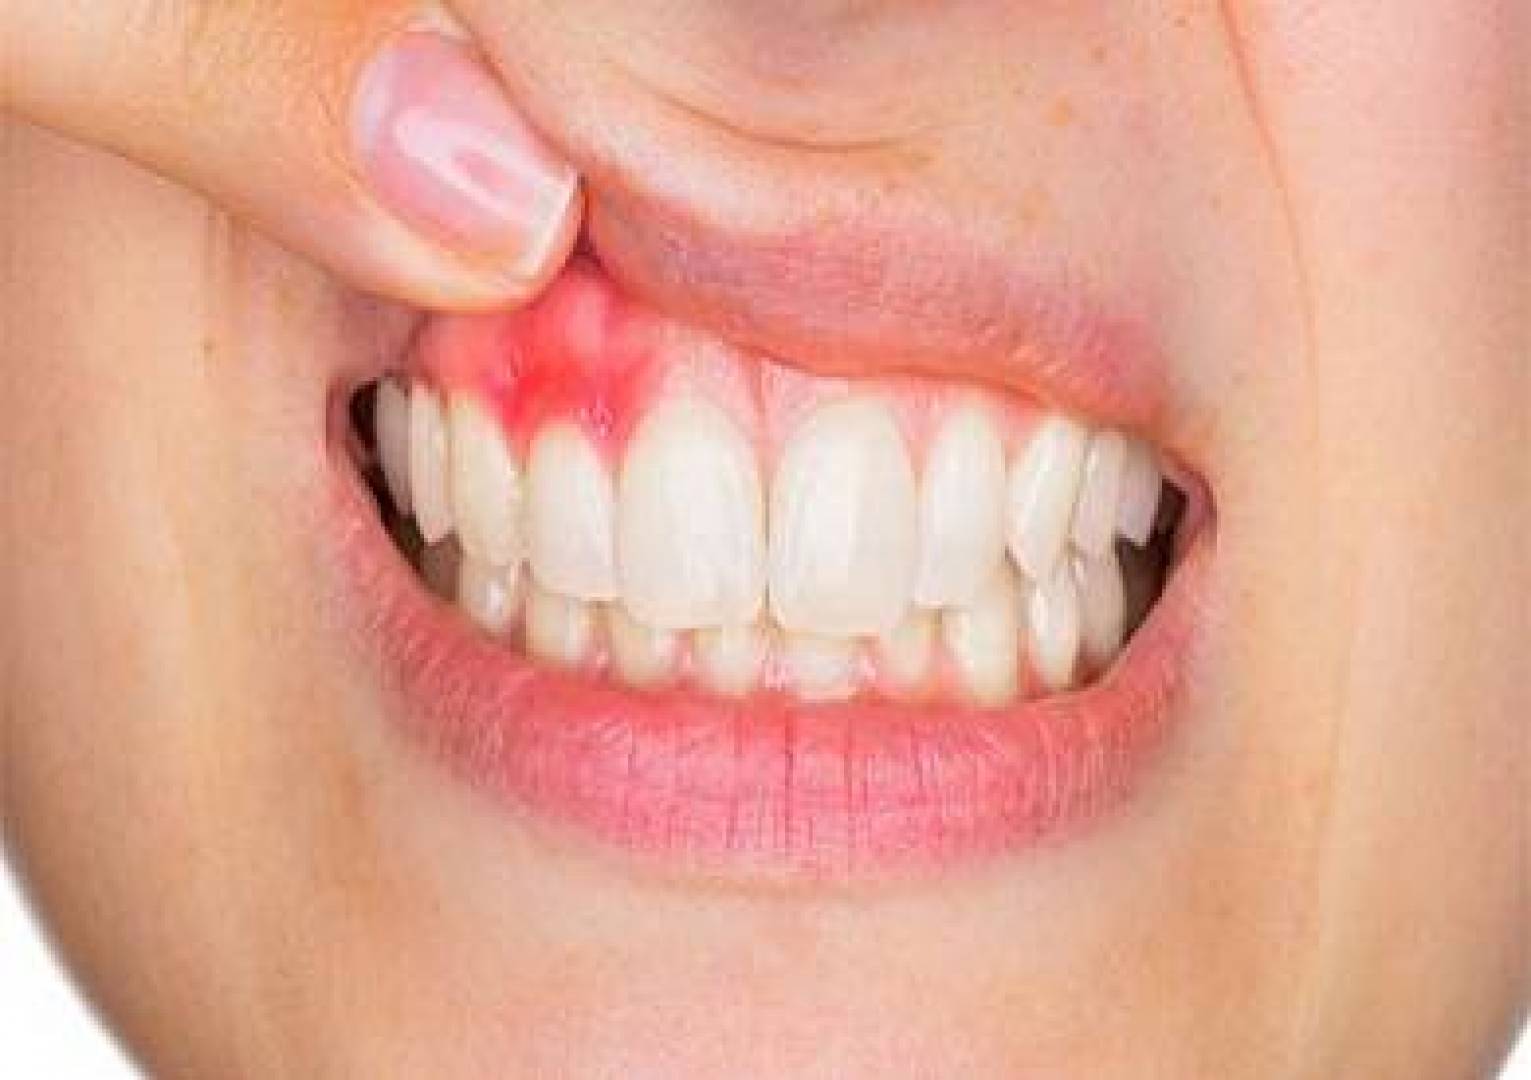 أسباب خراج الأسنان وأعراضه وطرق الوقاية منه وعلاجه